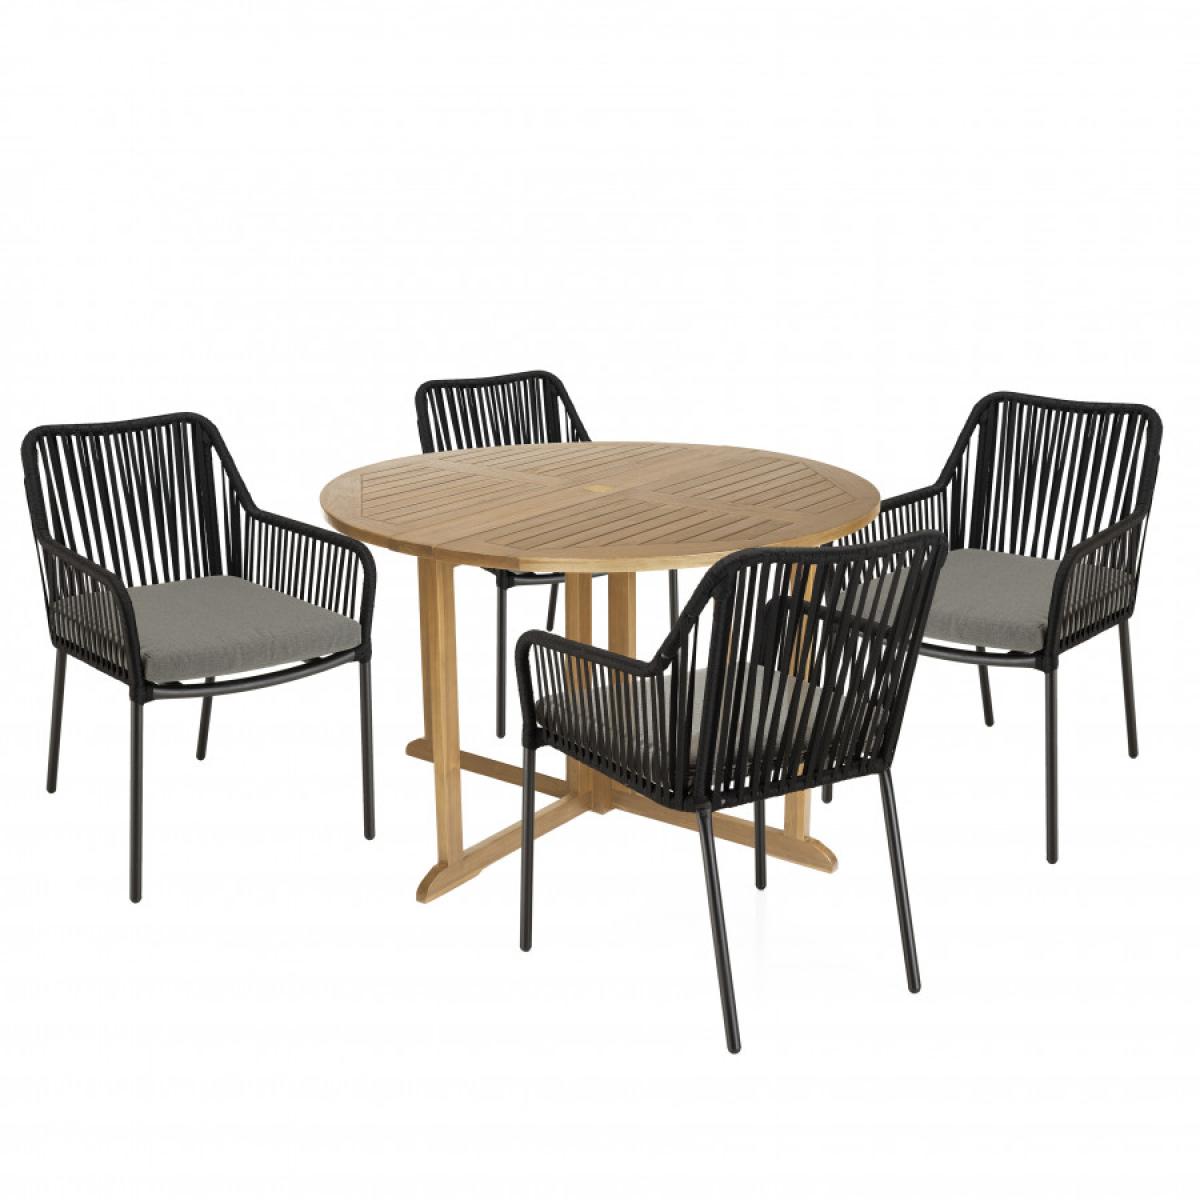 MALO - SALON DE JARDIN 4 PERS. - 1 Table ronde 120x120cm et 4 fauteuils noirs et gris en cordage